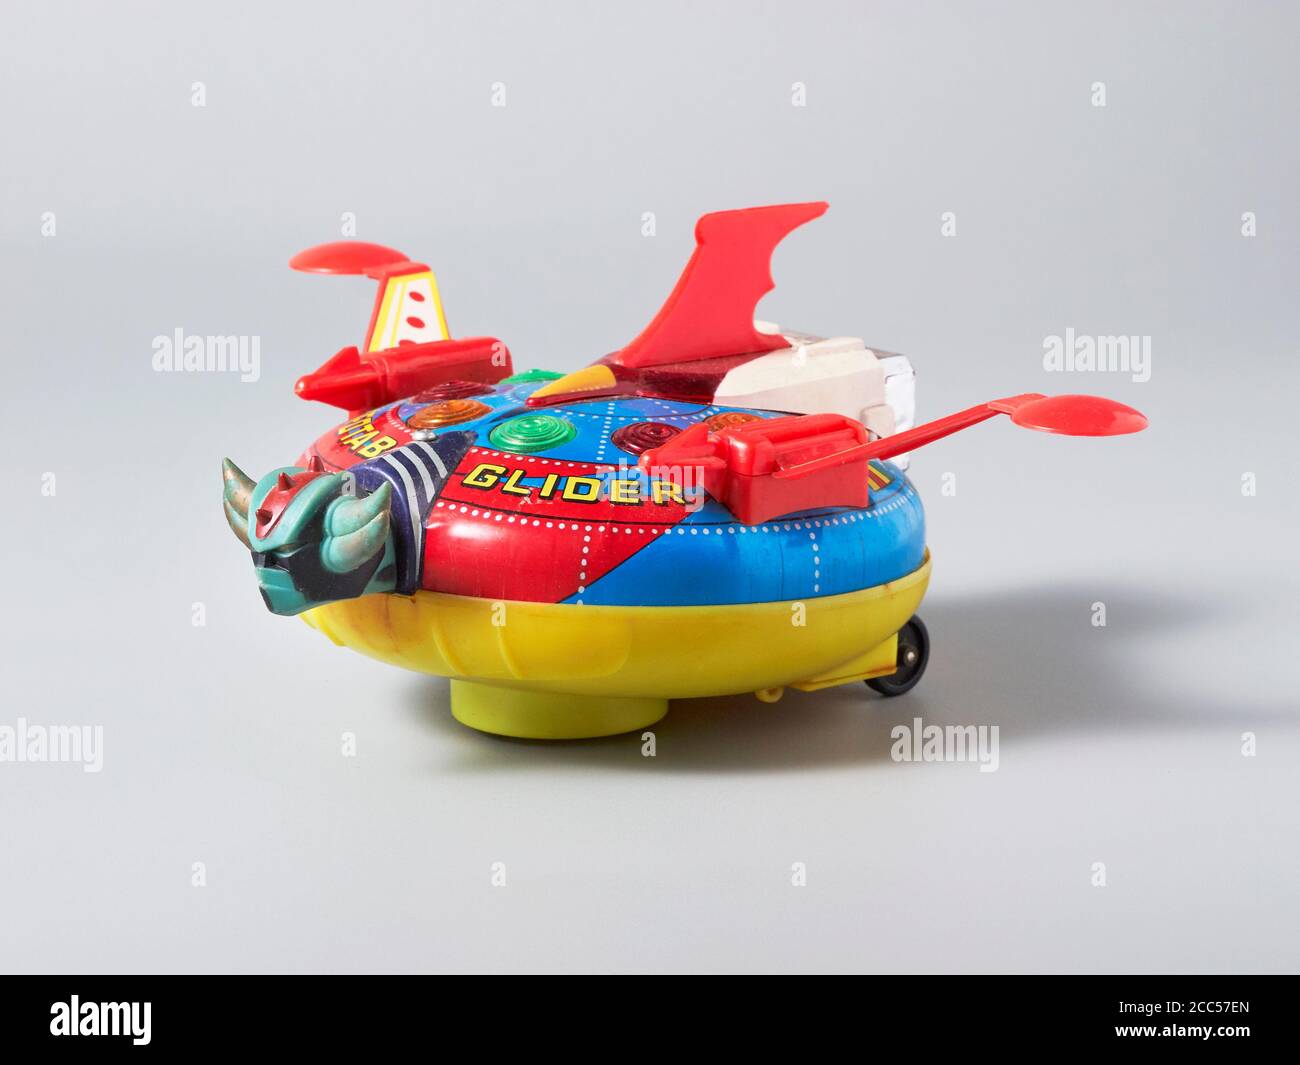 Objet volant étain jouet avec la tête d'un corned monstre Photo Stock -  Alamy